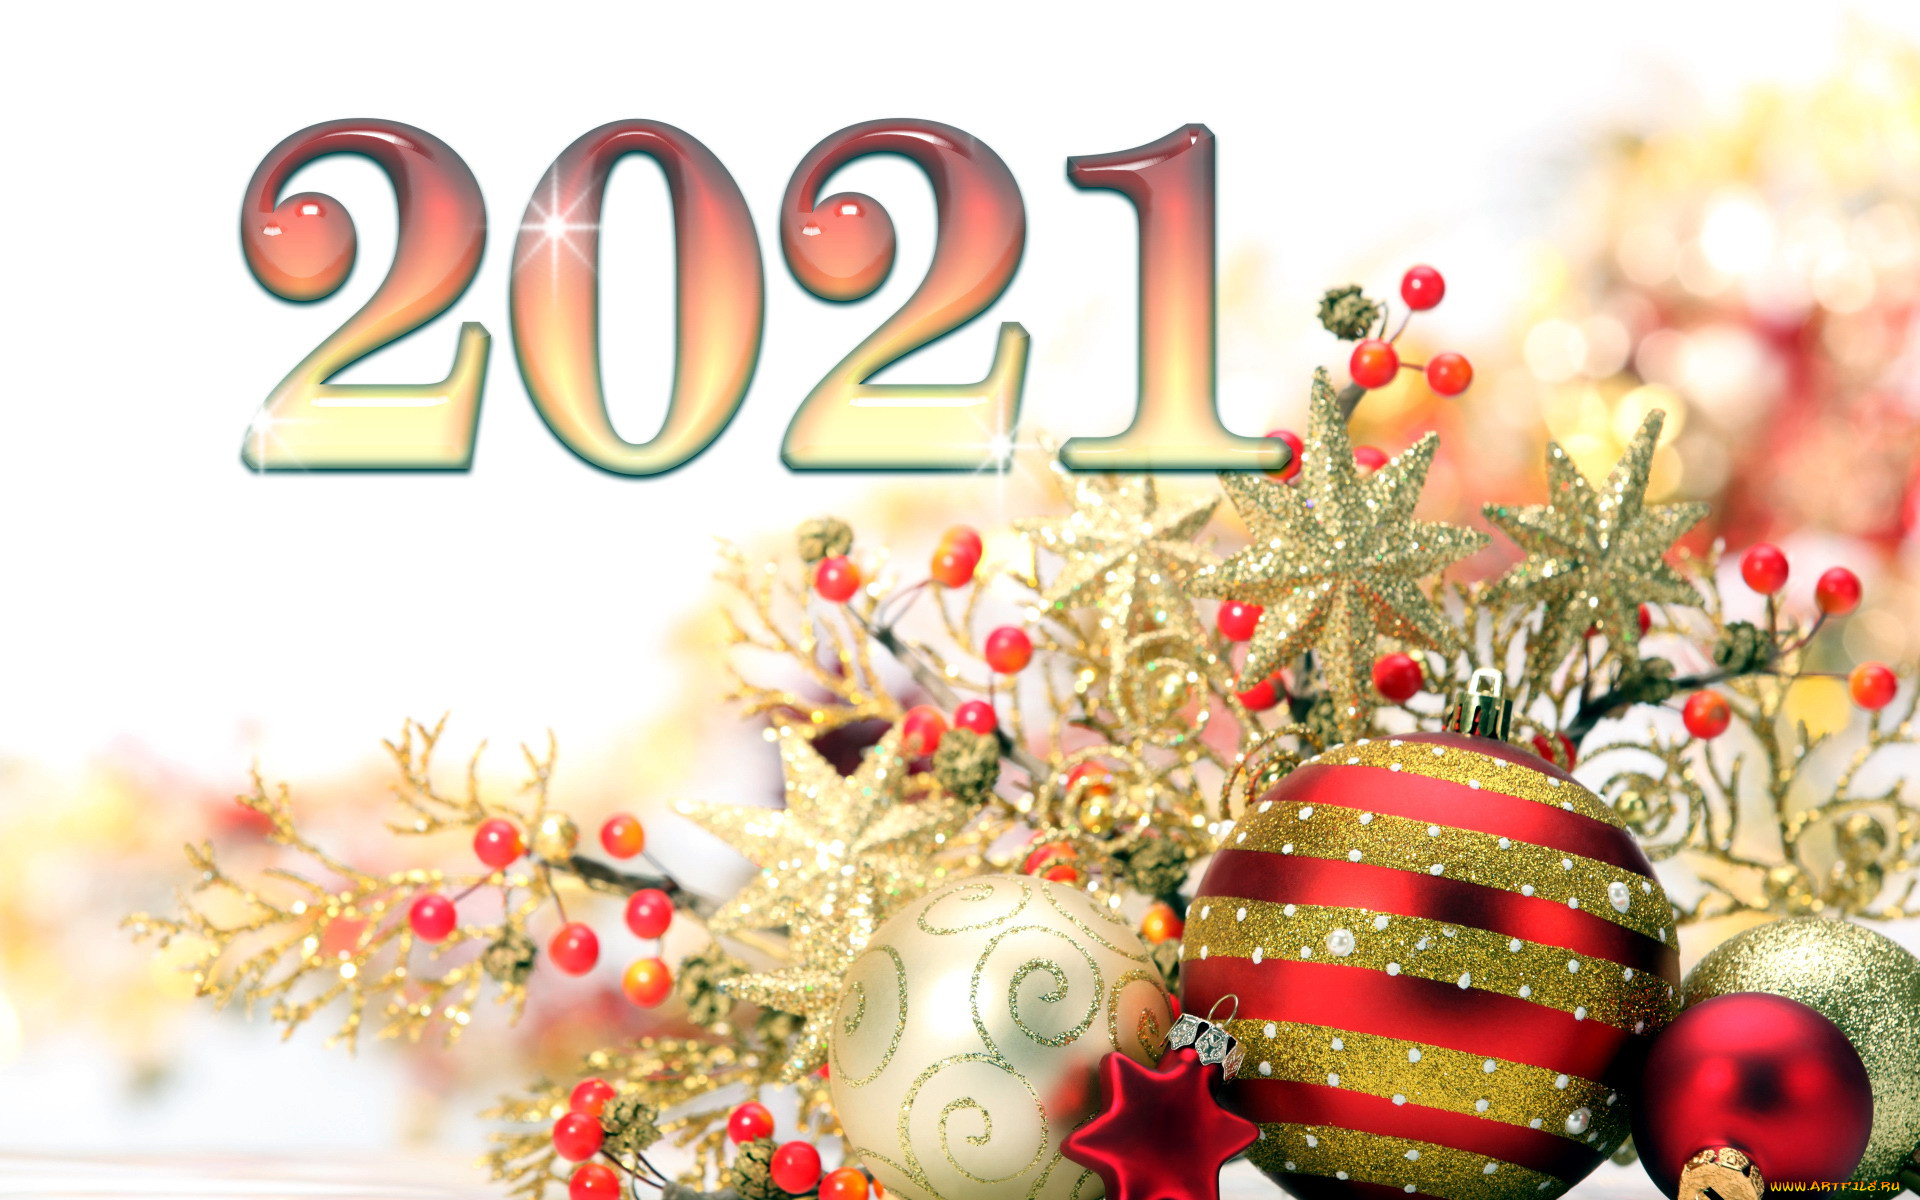 Новый год 2021 сайт. Обои на новый год 2021. Новогодние картинки 2021 год. Новогодняя Москва открытка. Картинки с днём нового года.